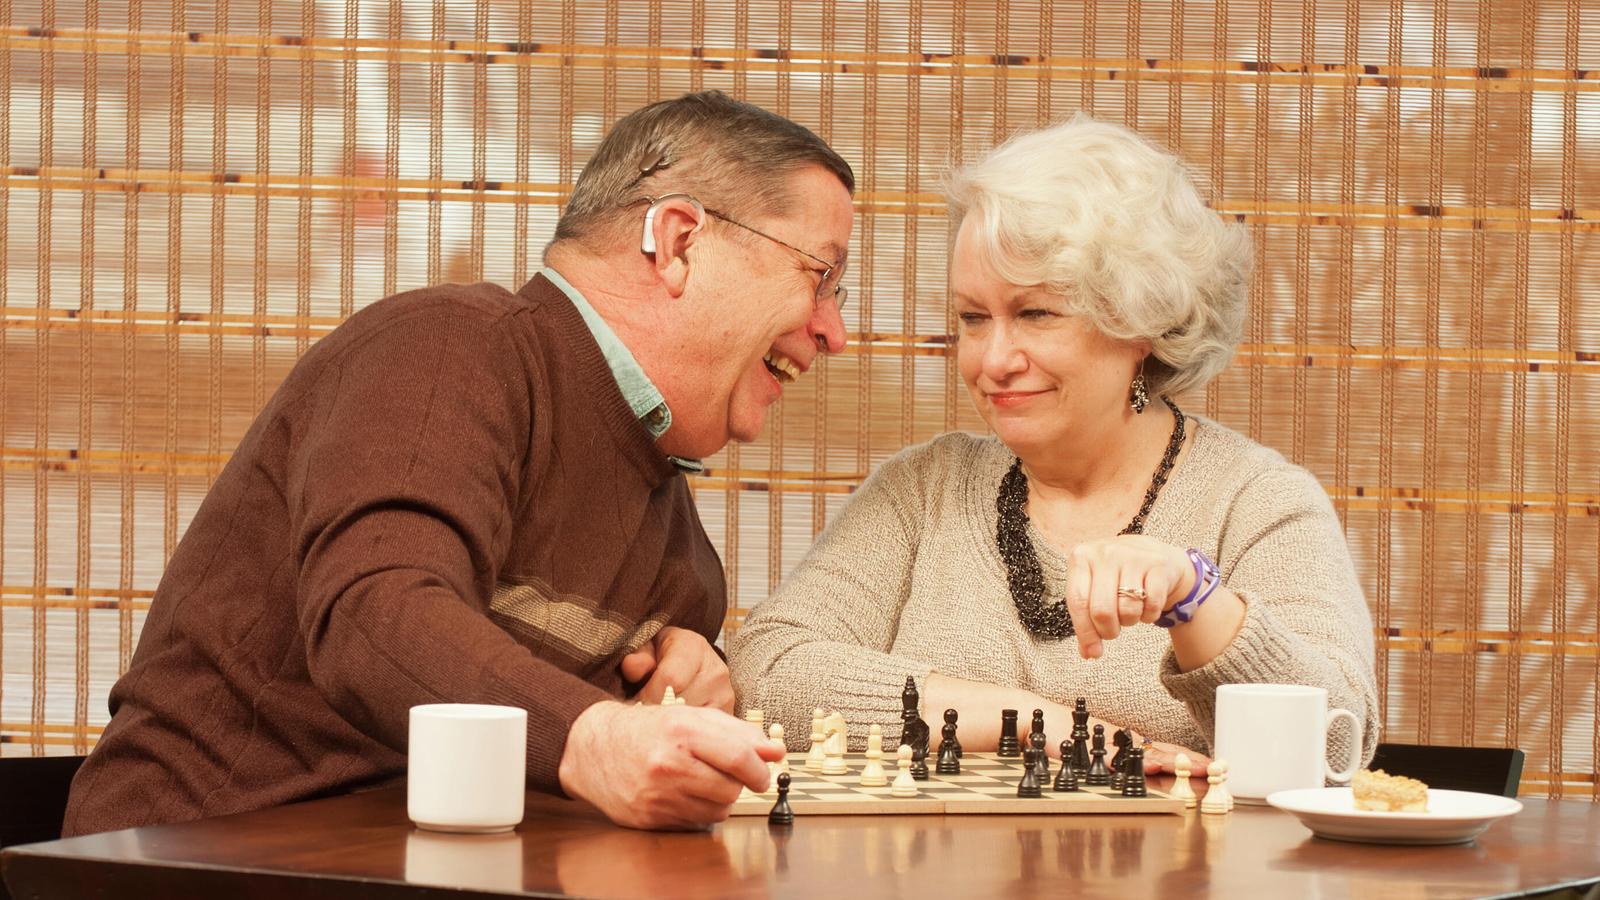 Il portatore Bill e la moglie Pam giocano a scacchi